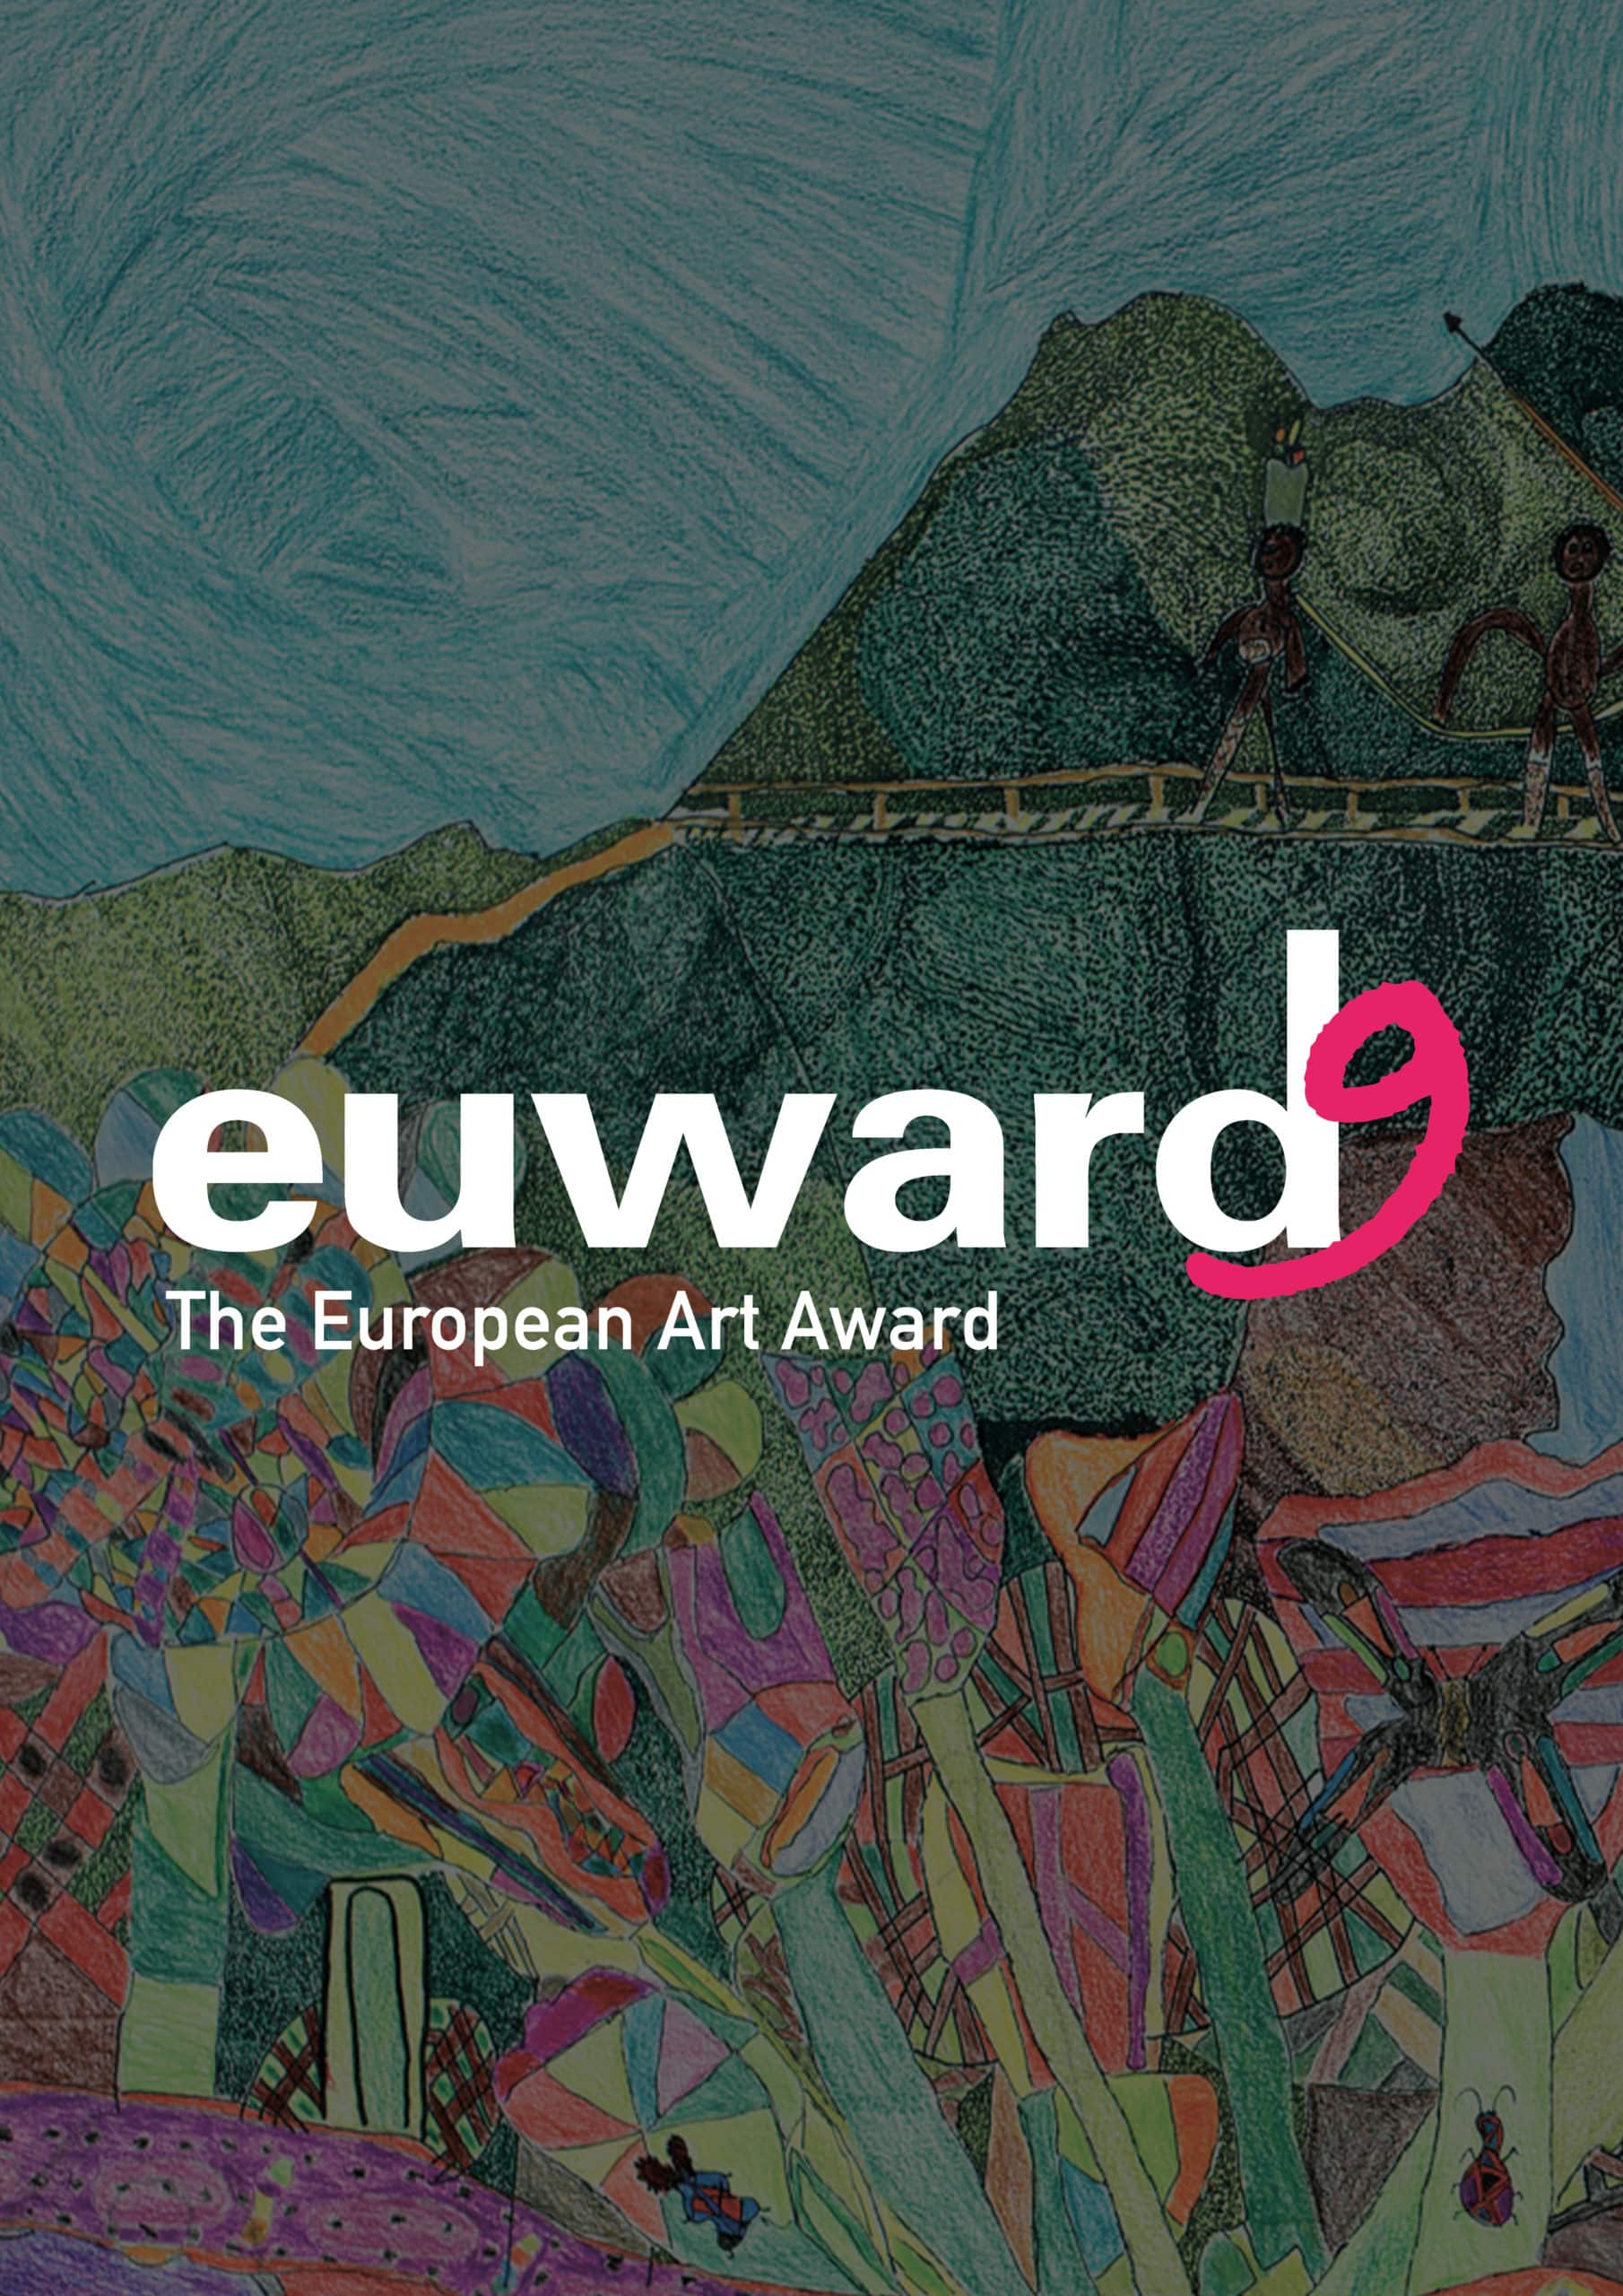 Der euward wird von internationalen Museen und Kulturinstitutionen als Partner unterstützt